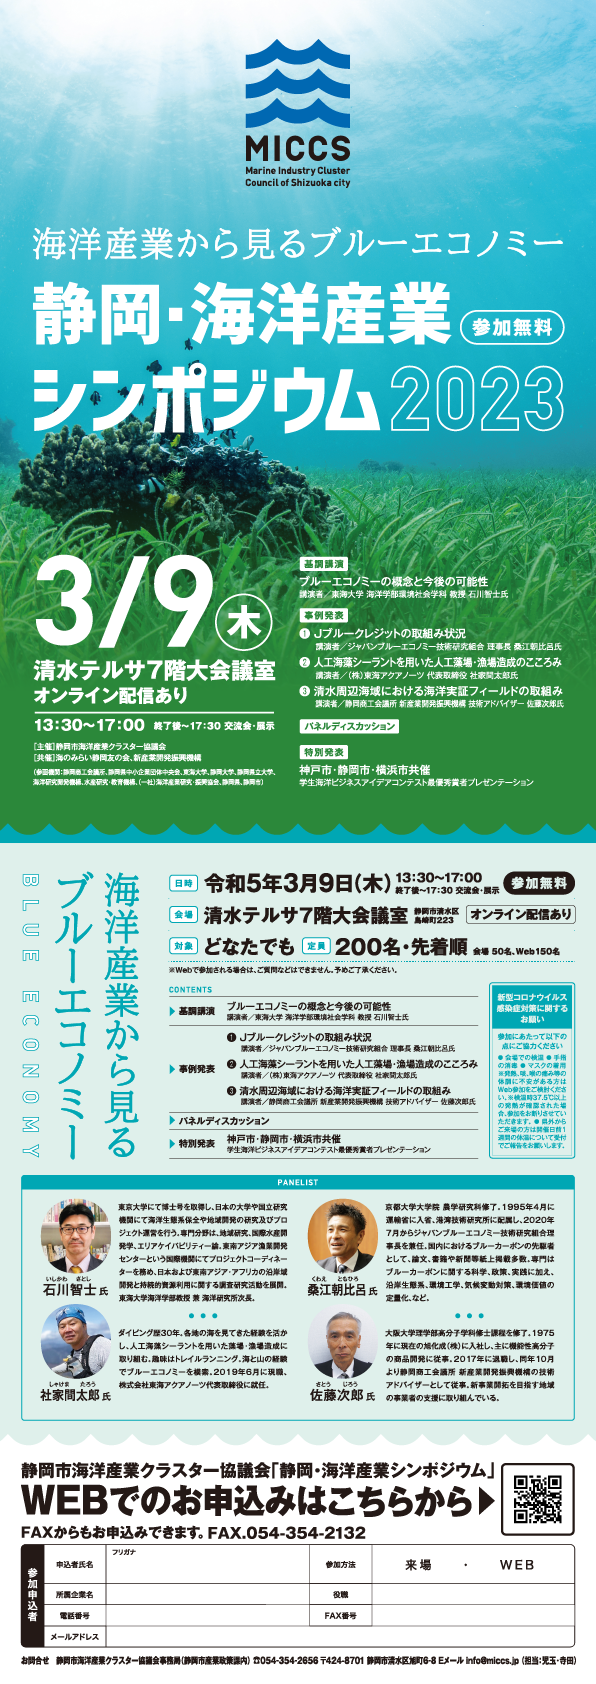 静岡・海洋産業シンポジウム2023の開催のお知らせ。